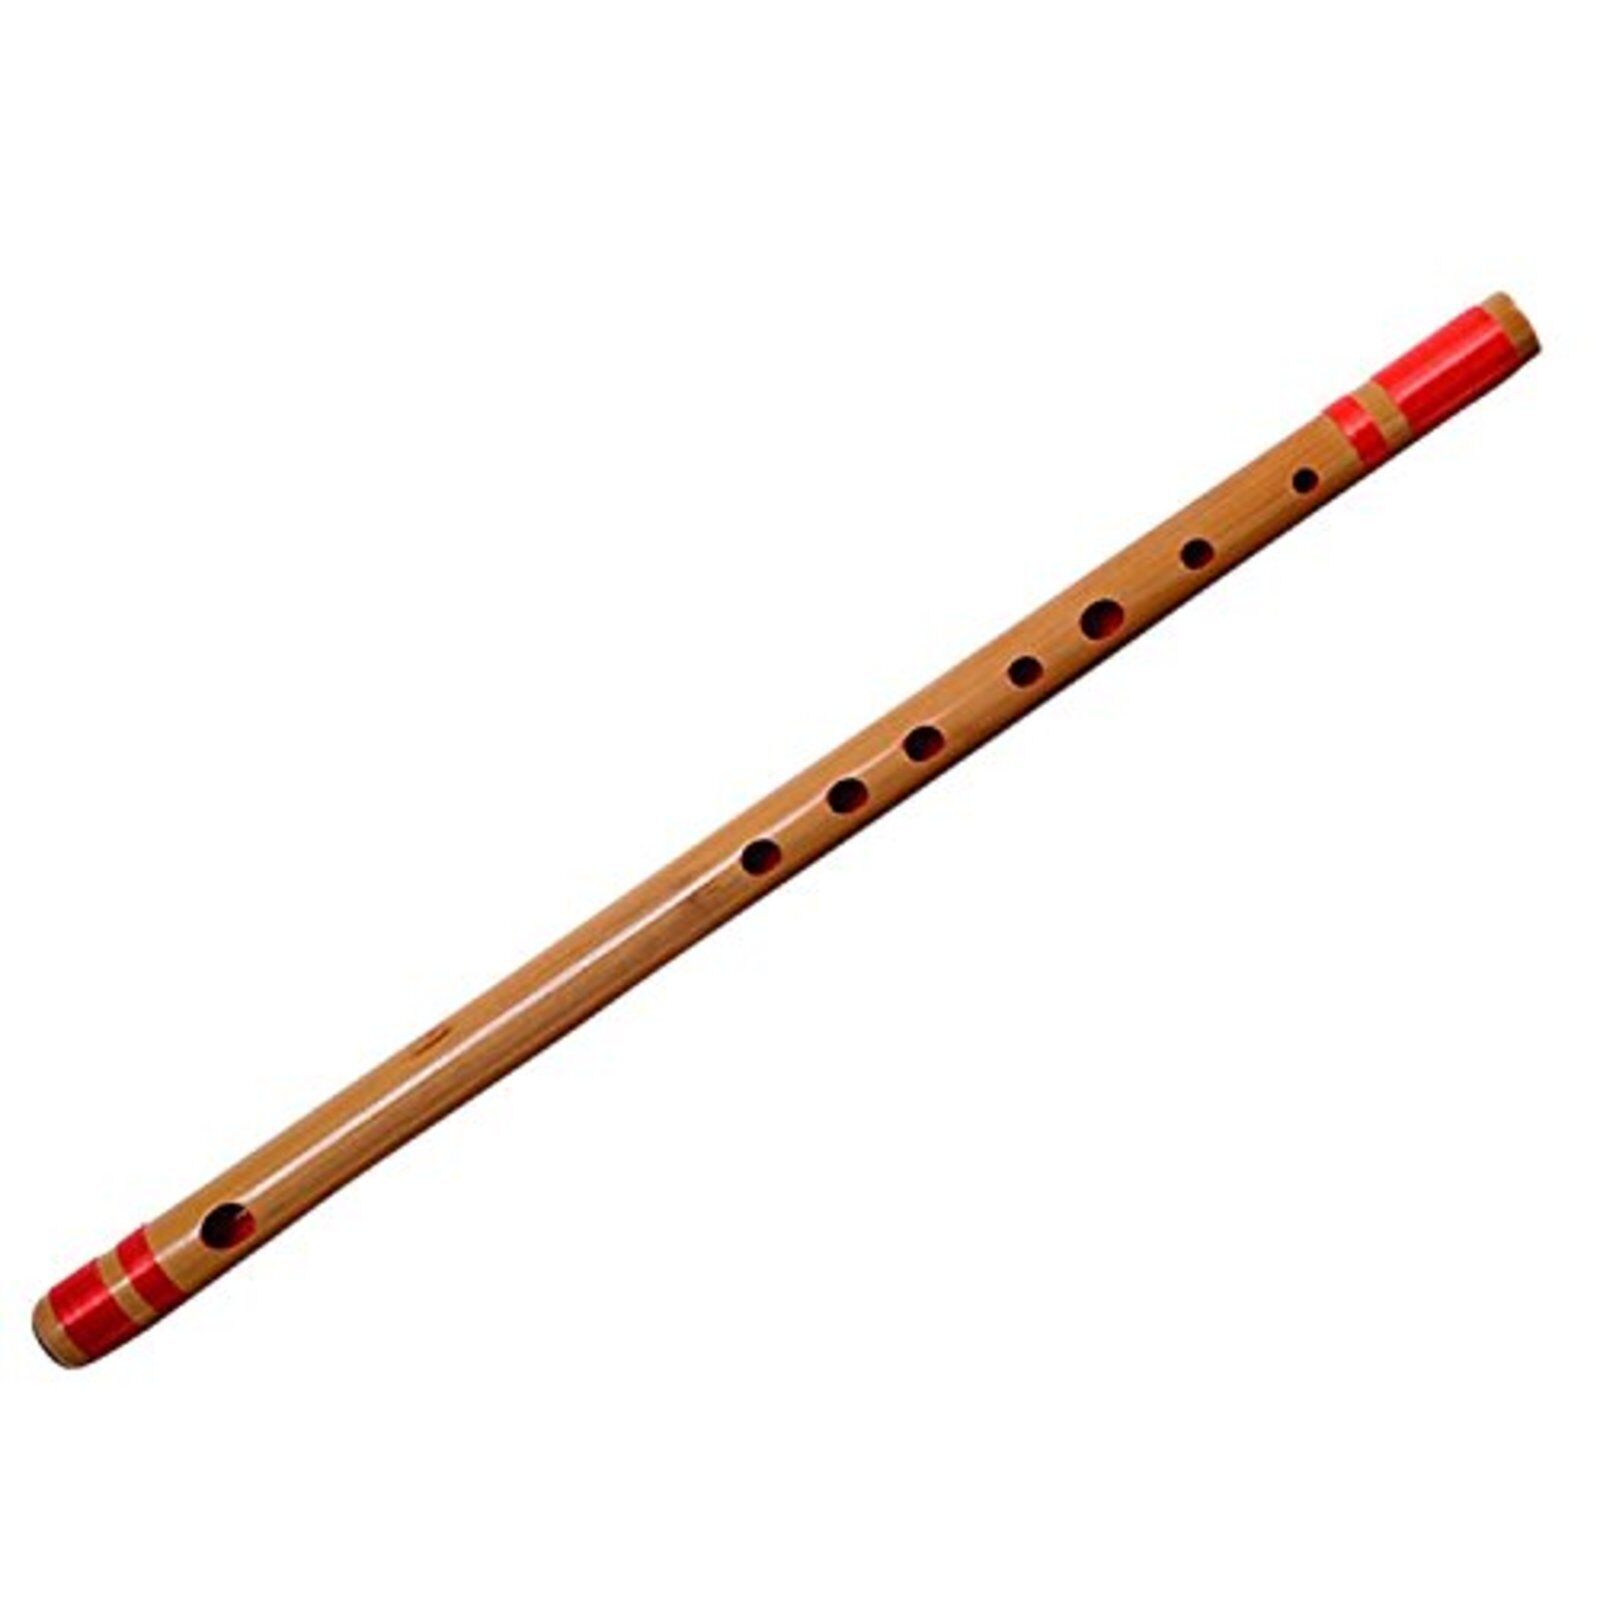 Yamamoto Takezaikuya Yamamototakizayikuya Bamboo Bamboo Flute Red Cord F/s Track